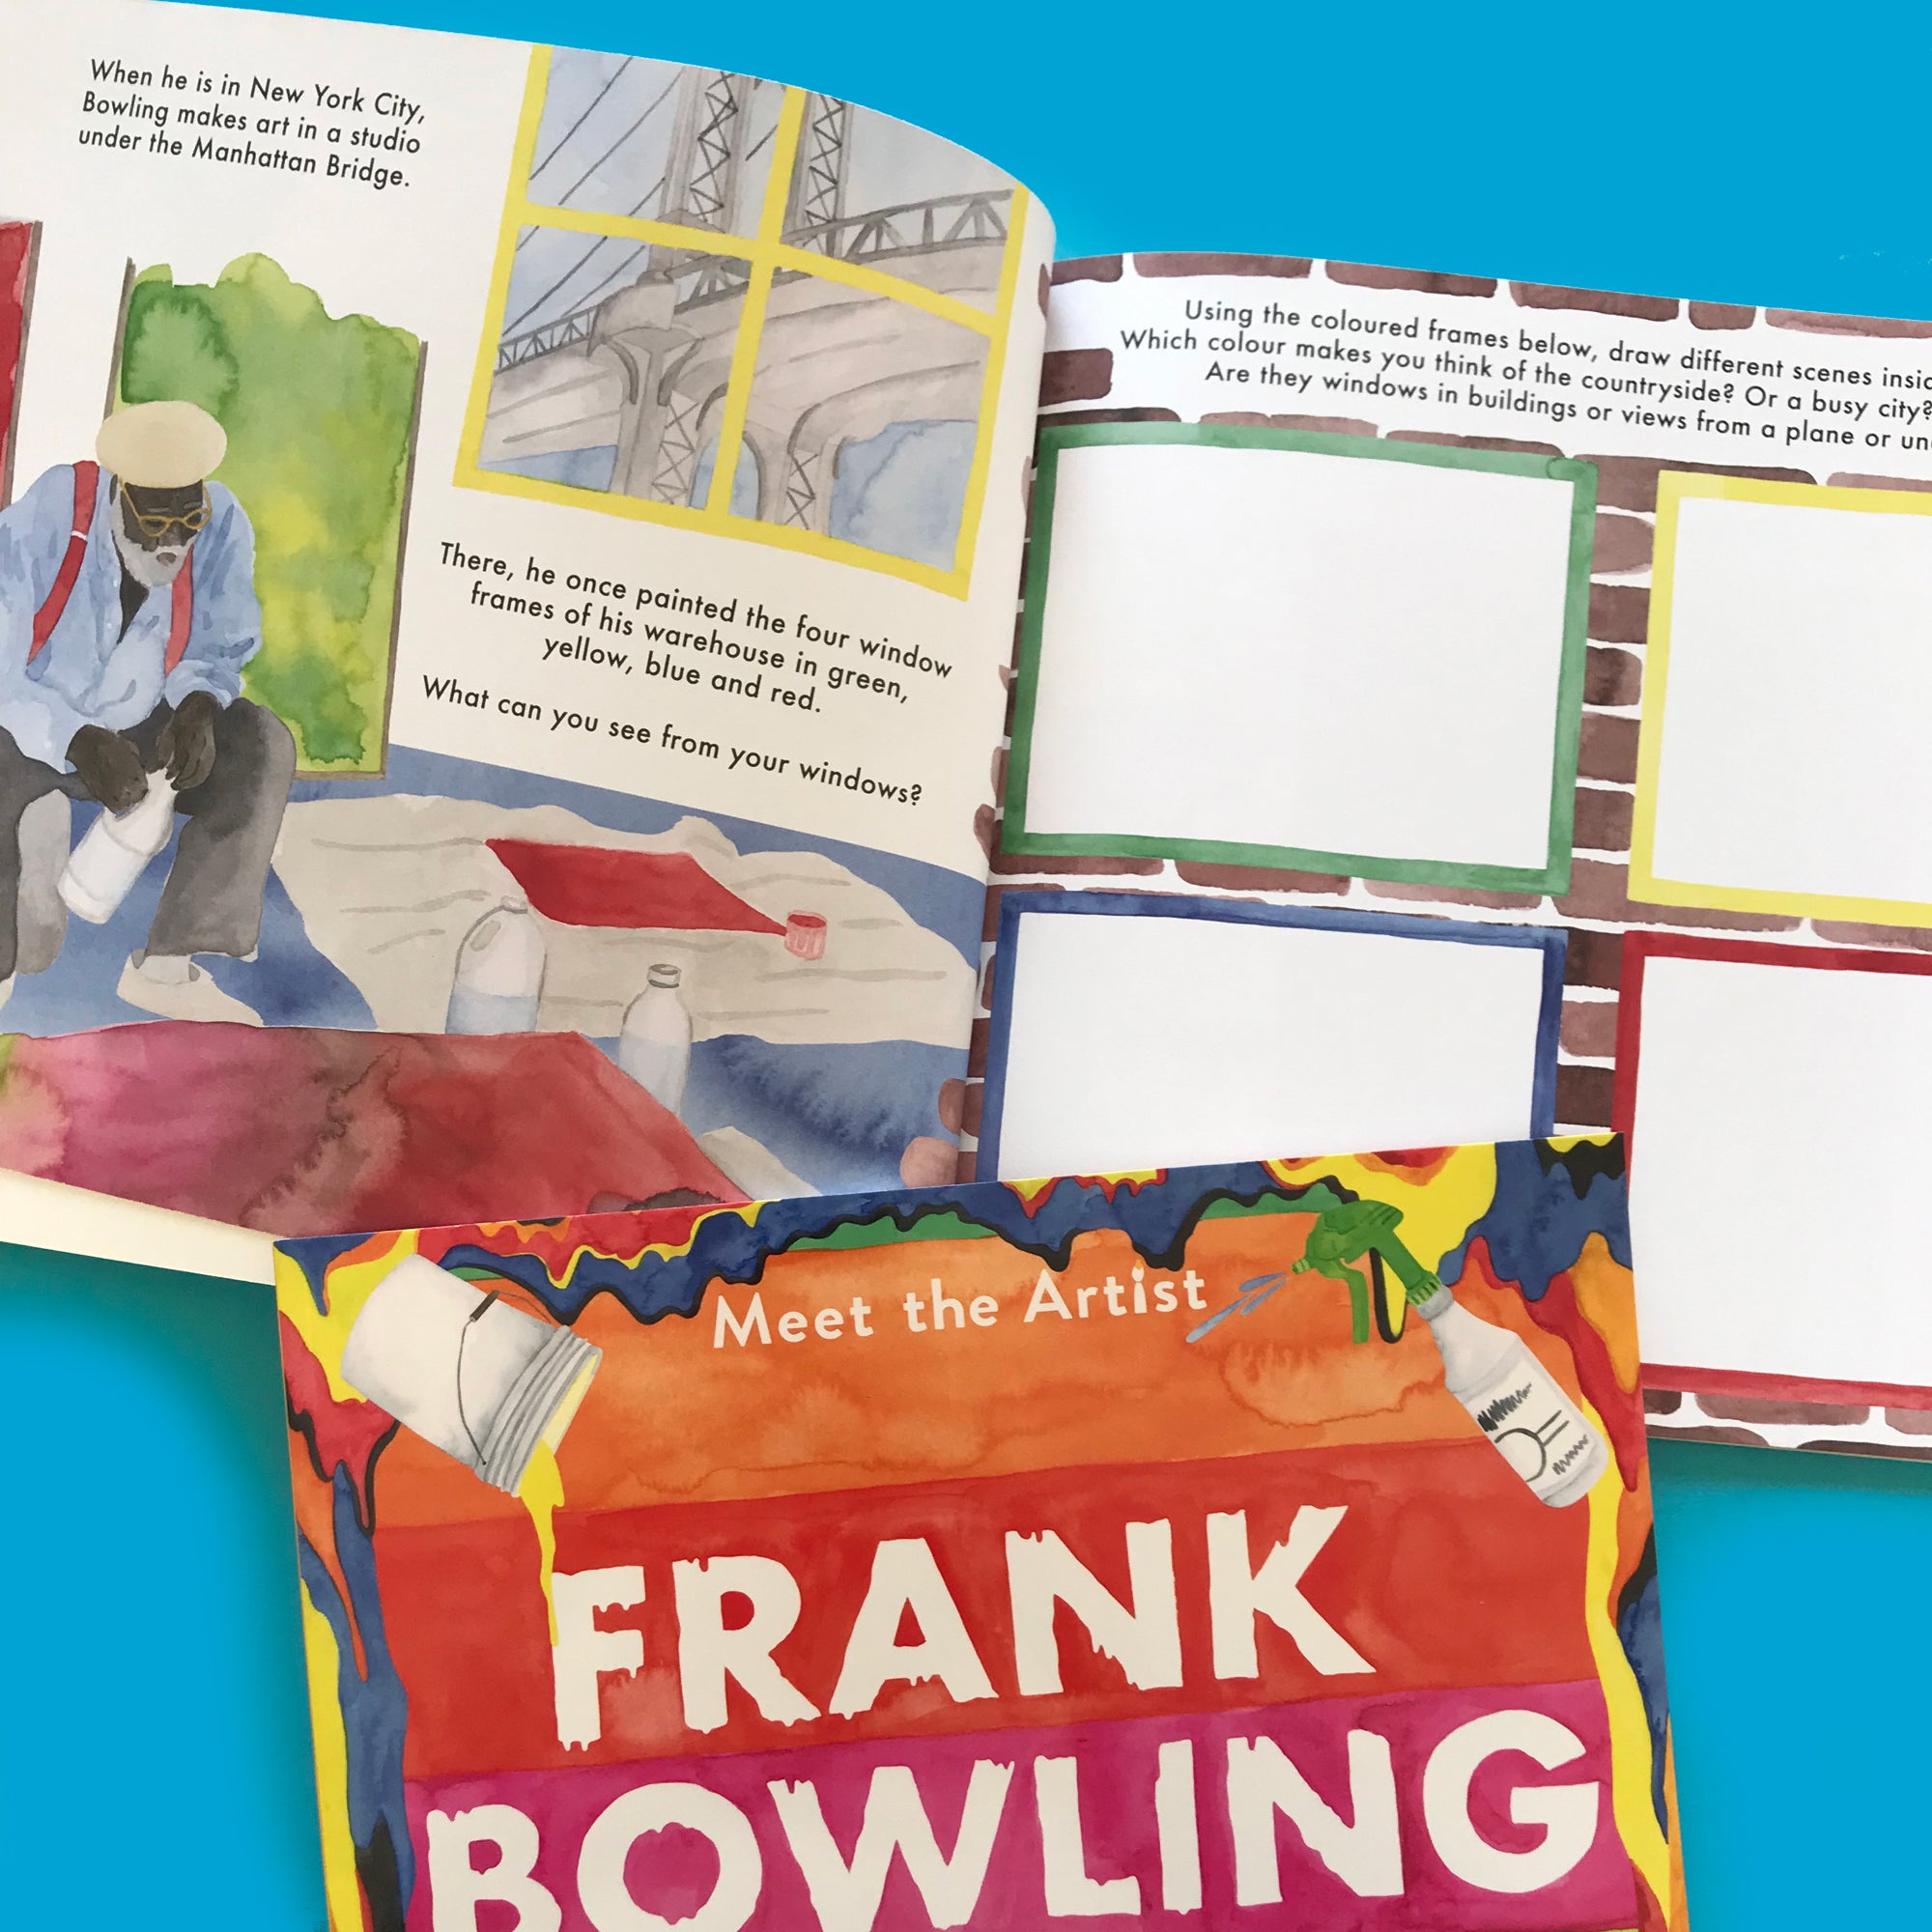 Meet the Artist: Frank Bowling activity book